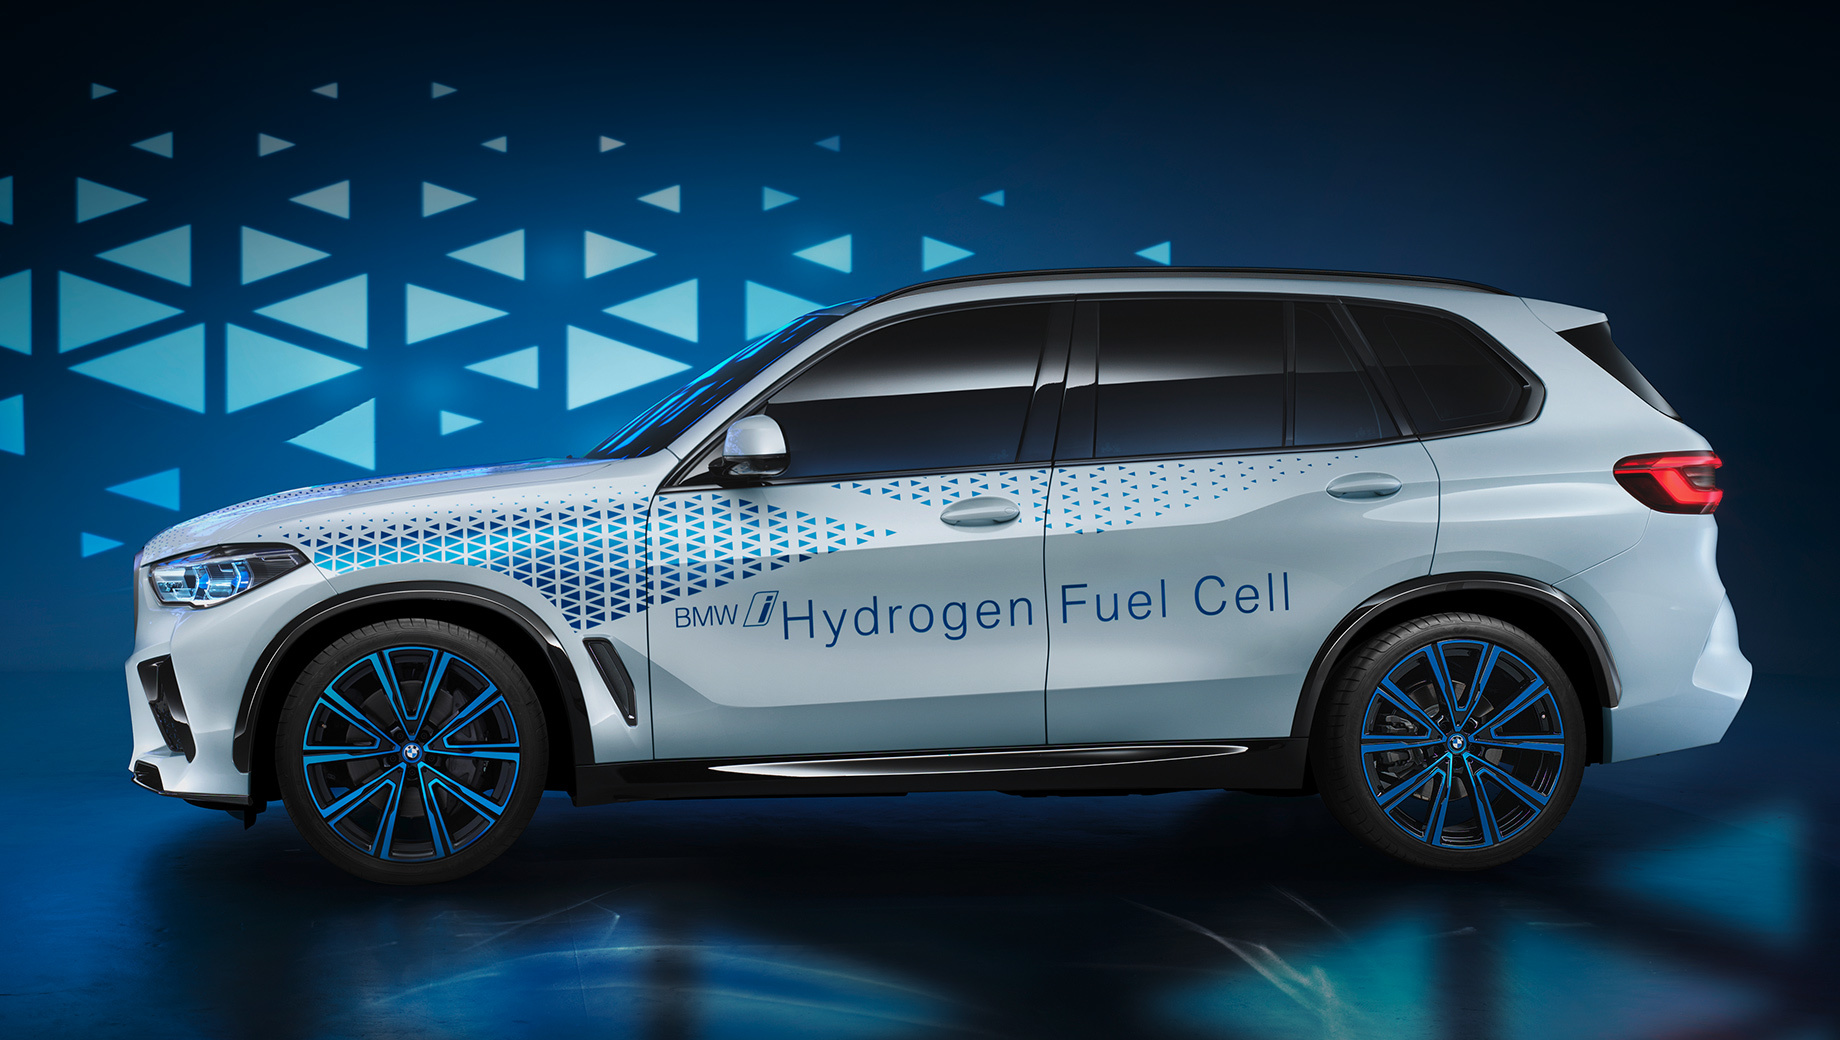 Bmw i hydrogen next. Мелкосерийный BMW i Hydrogen Next является частью глобальной стратегии концерна Number One &gt; Next, в рамках которой к 2025 году в модельном ряду BMW должно быть 25 гибридов и 12 электрокаров, среди которых iX3, iNext, i4 и i5.